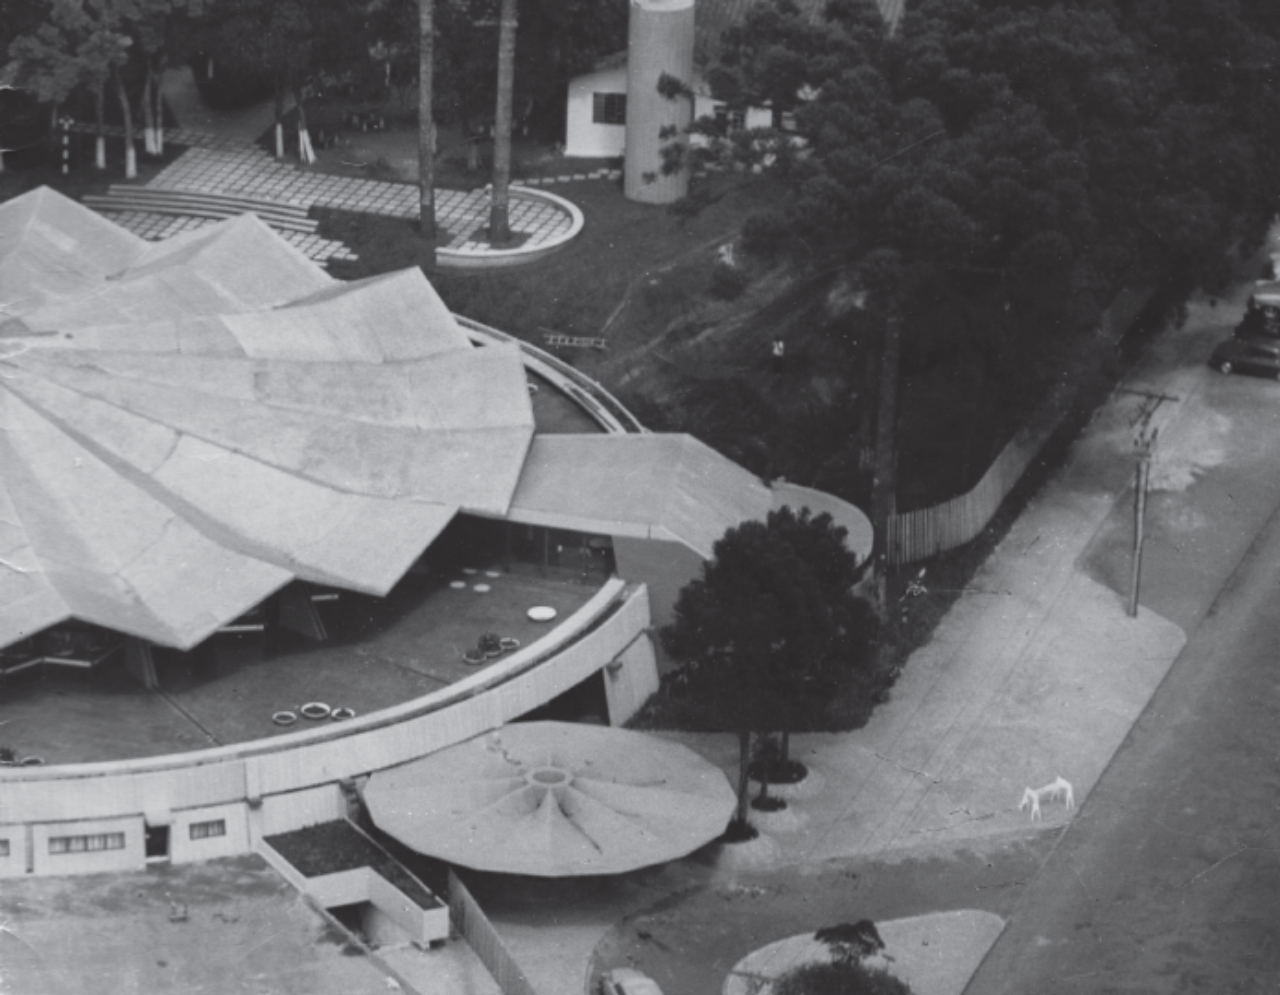 Visão aérea da sede social do clube, com destaque para a laje plissada de concreto, que foi um desafio para arquitetos e engenheiros envolvidos na construção